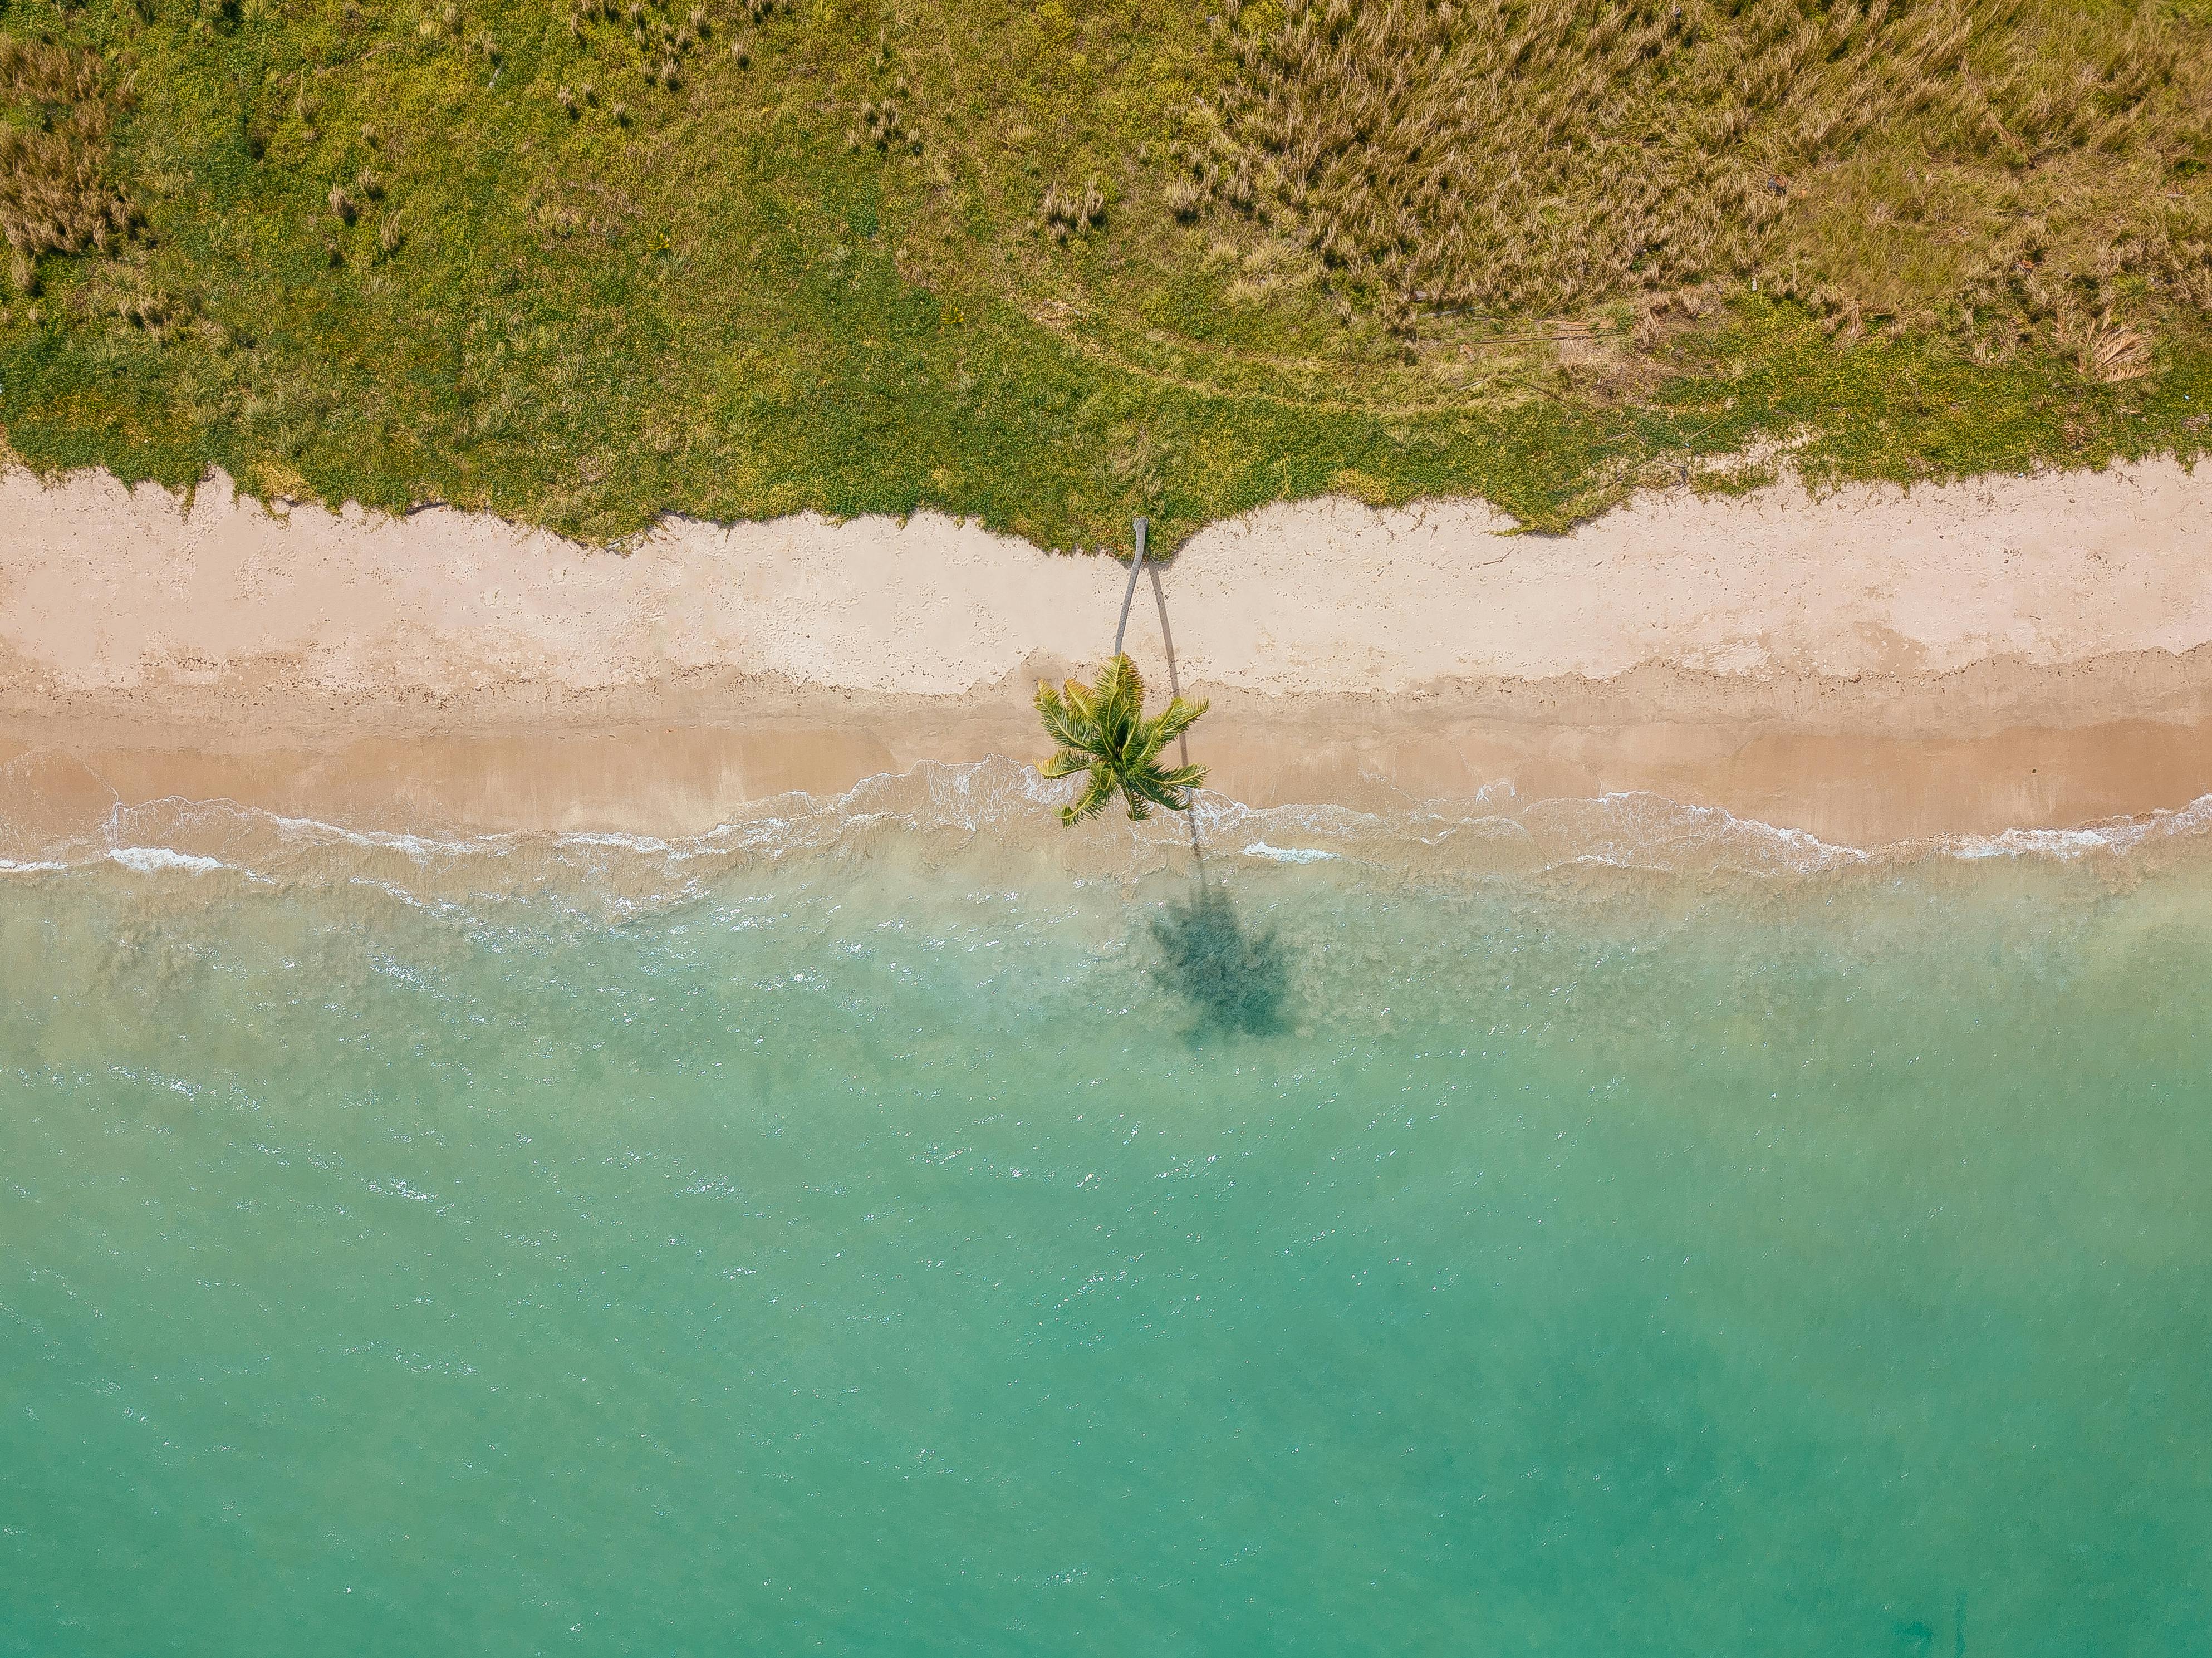 100.000+ melhores imagens de Areia Movediça · Download 100% grátis · Fotos  profissionais do Pexels